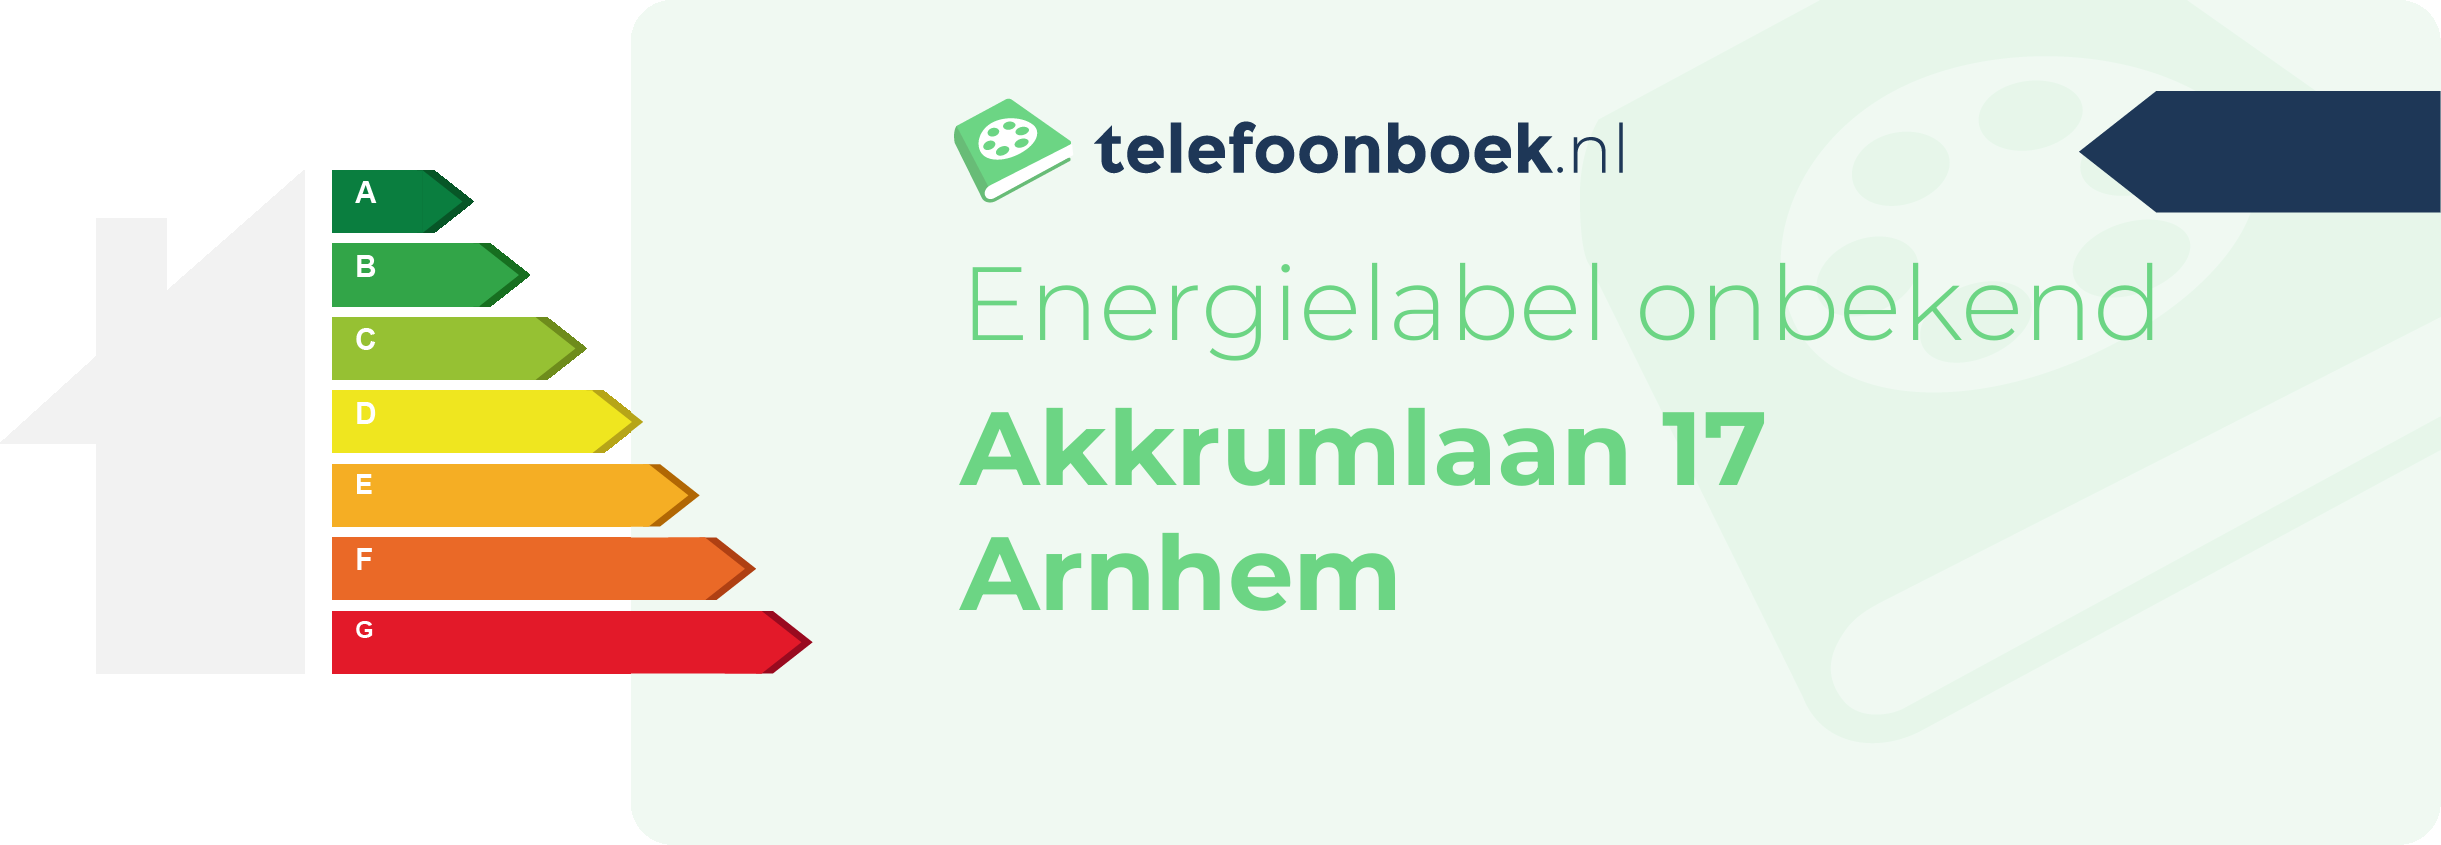 Energielabel Akkrumlaan 17 Arnhem